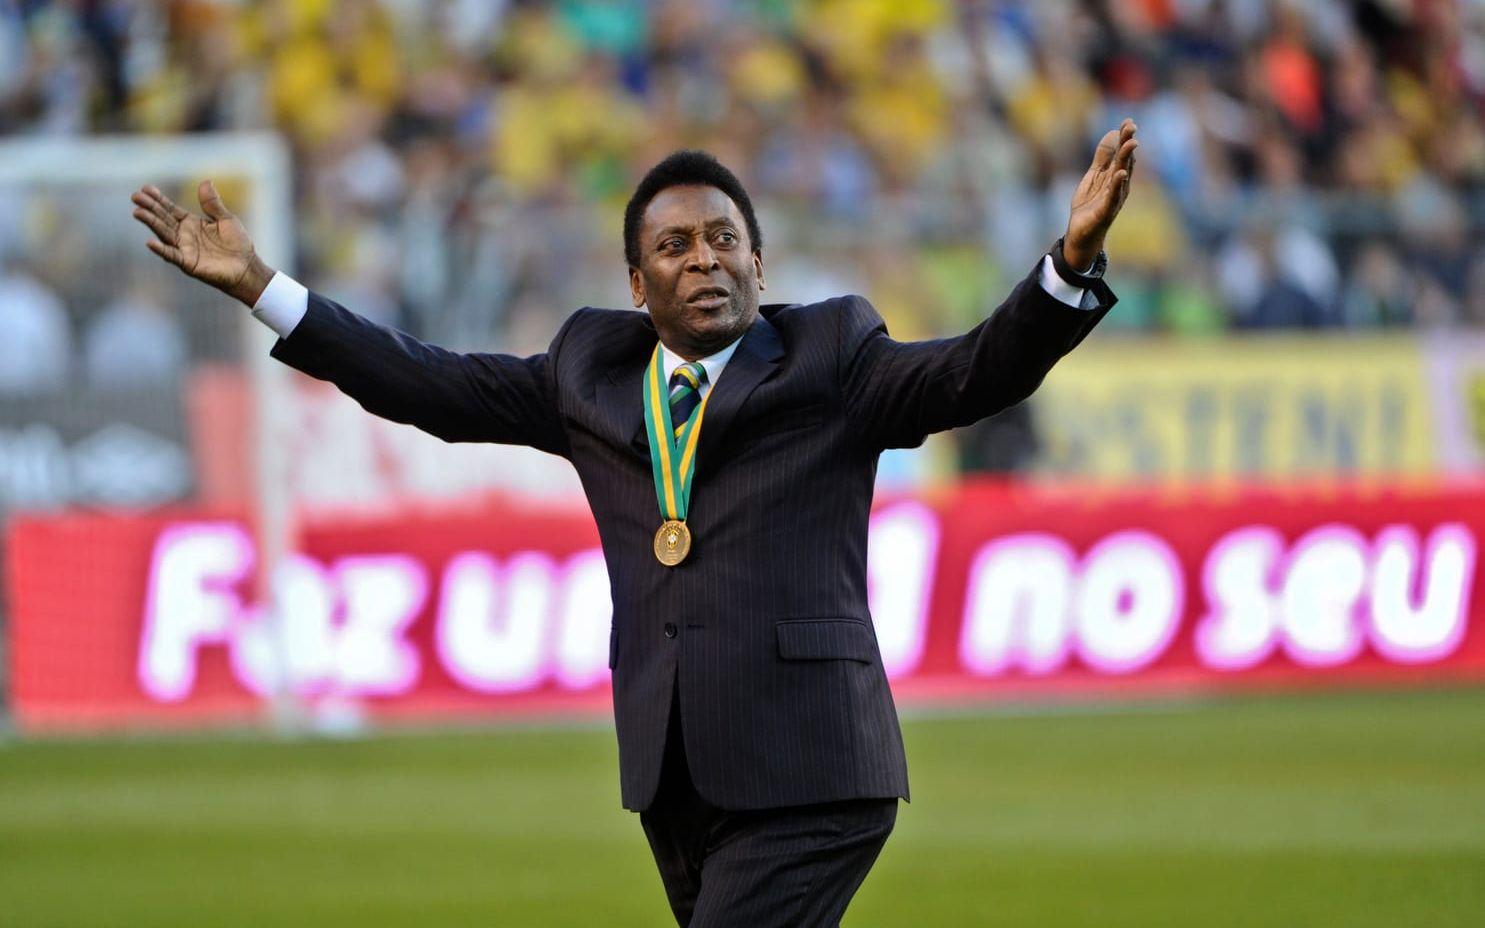 2012 återvände Pelé till Råsunda, där han avgjorde VM-finalen 1958. Det var den sista landskampen som spelades på arenan.